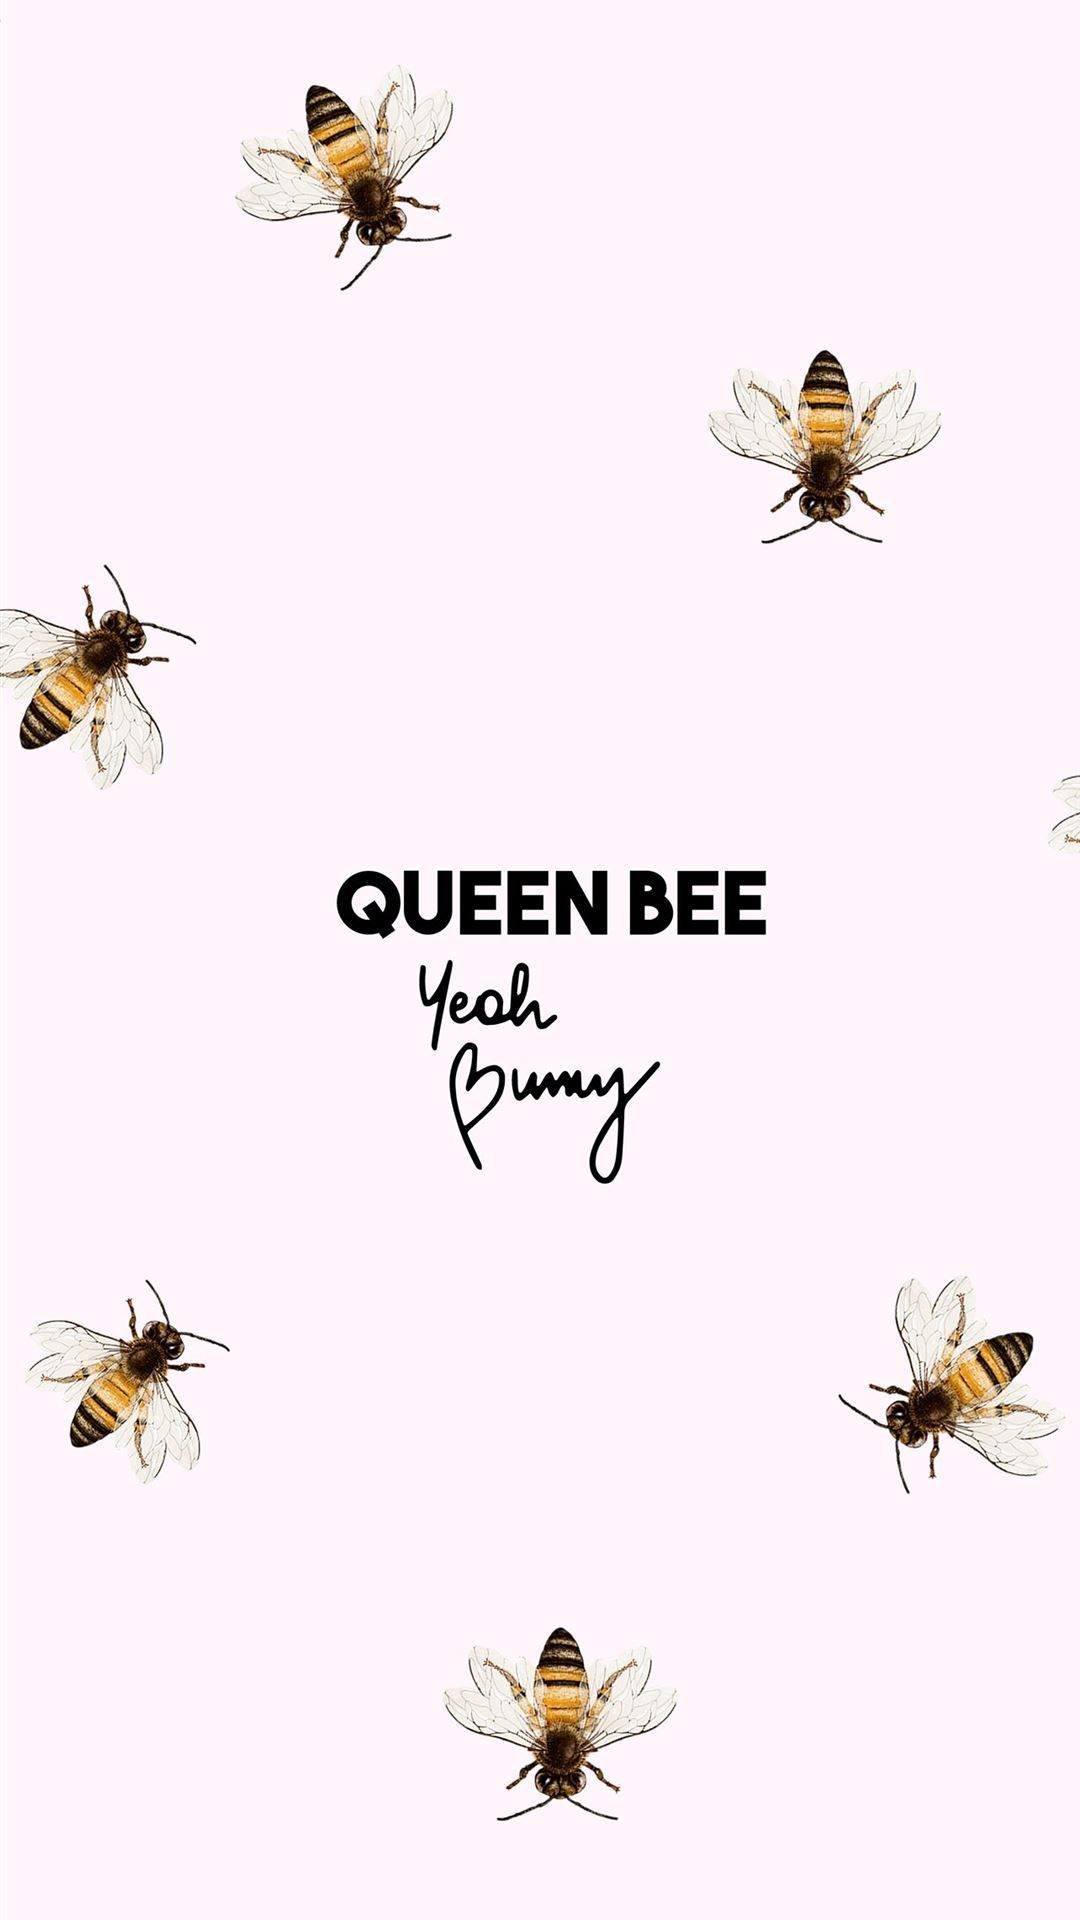 Queen bee wallpaper, yeah bunny, phone wallpaper, aesthetic, phone background, wallpaper, yeah bunny, yeah bunny wallpaper, yeah bunny phone wallpaper - Honey